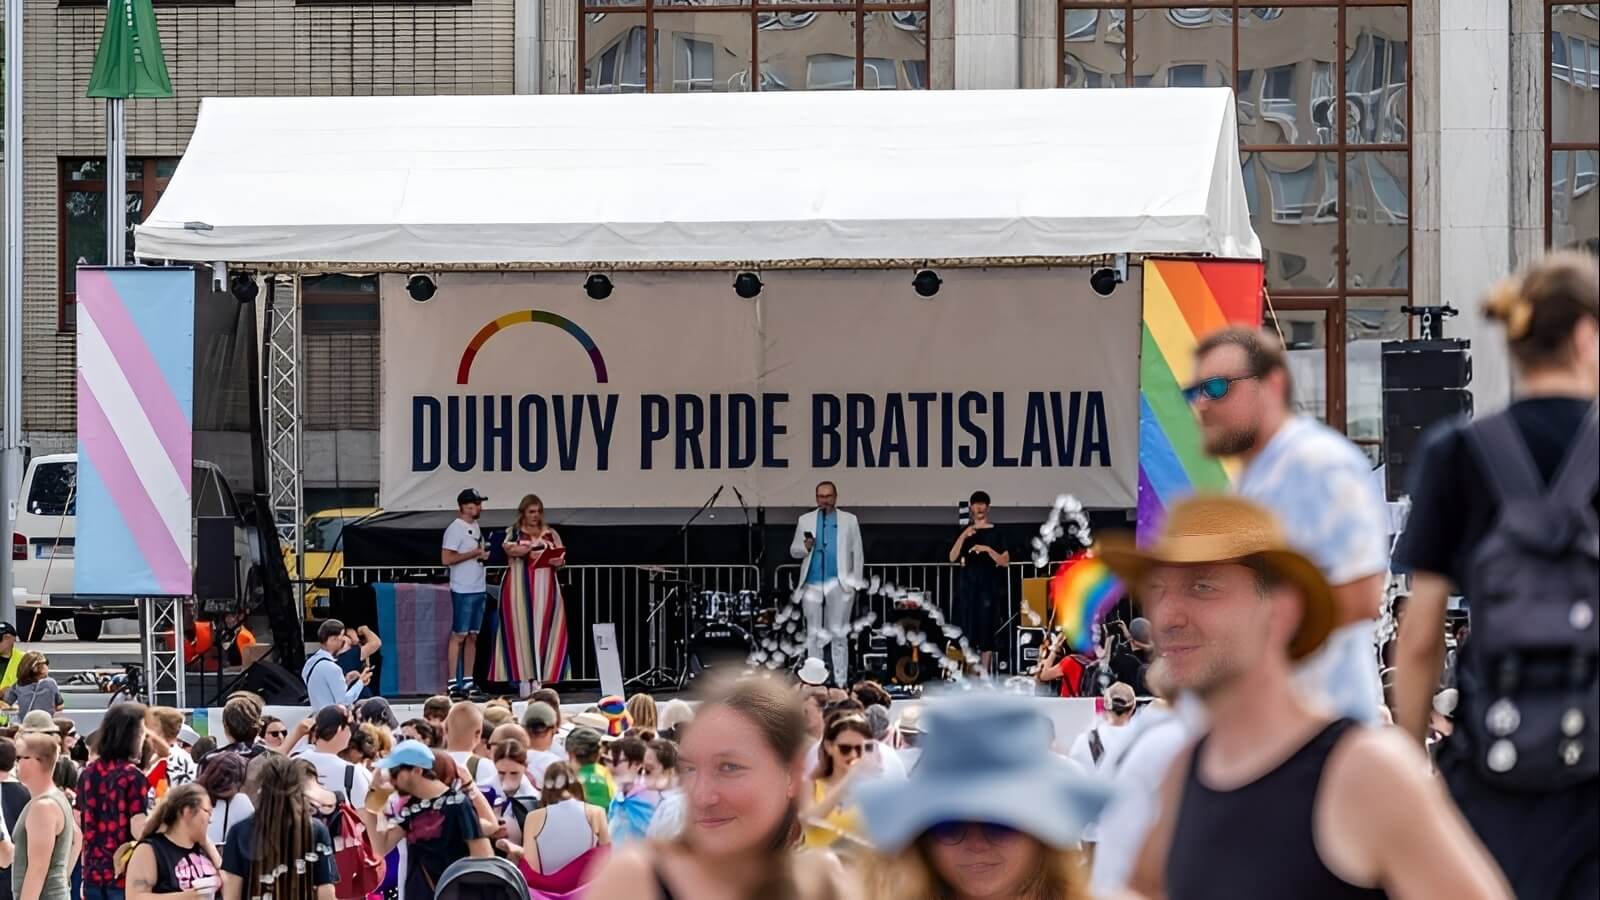 Міністерство культури Словаччини скоротить заходи на тему ЛГБТ+